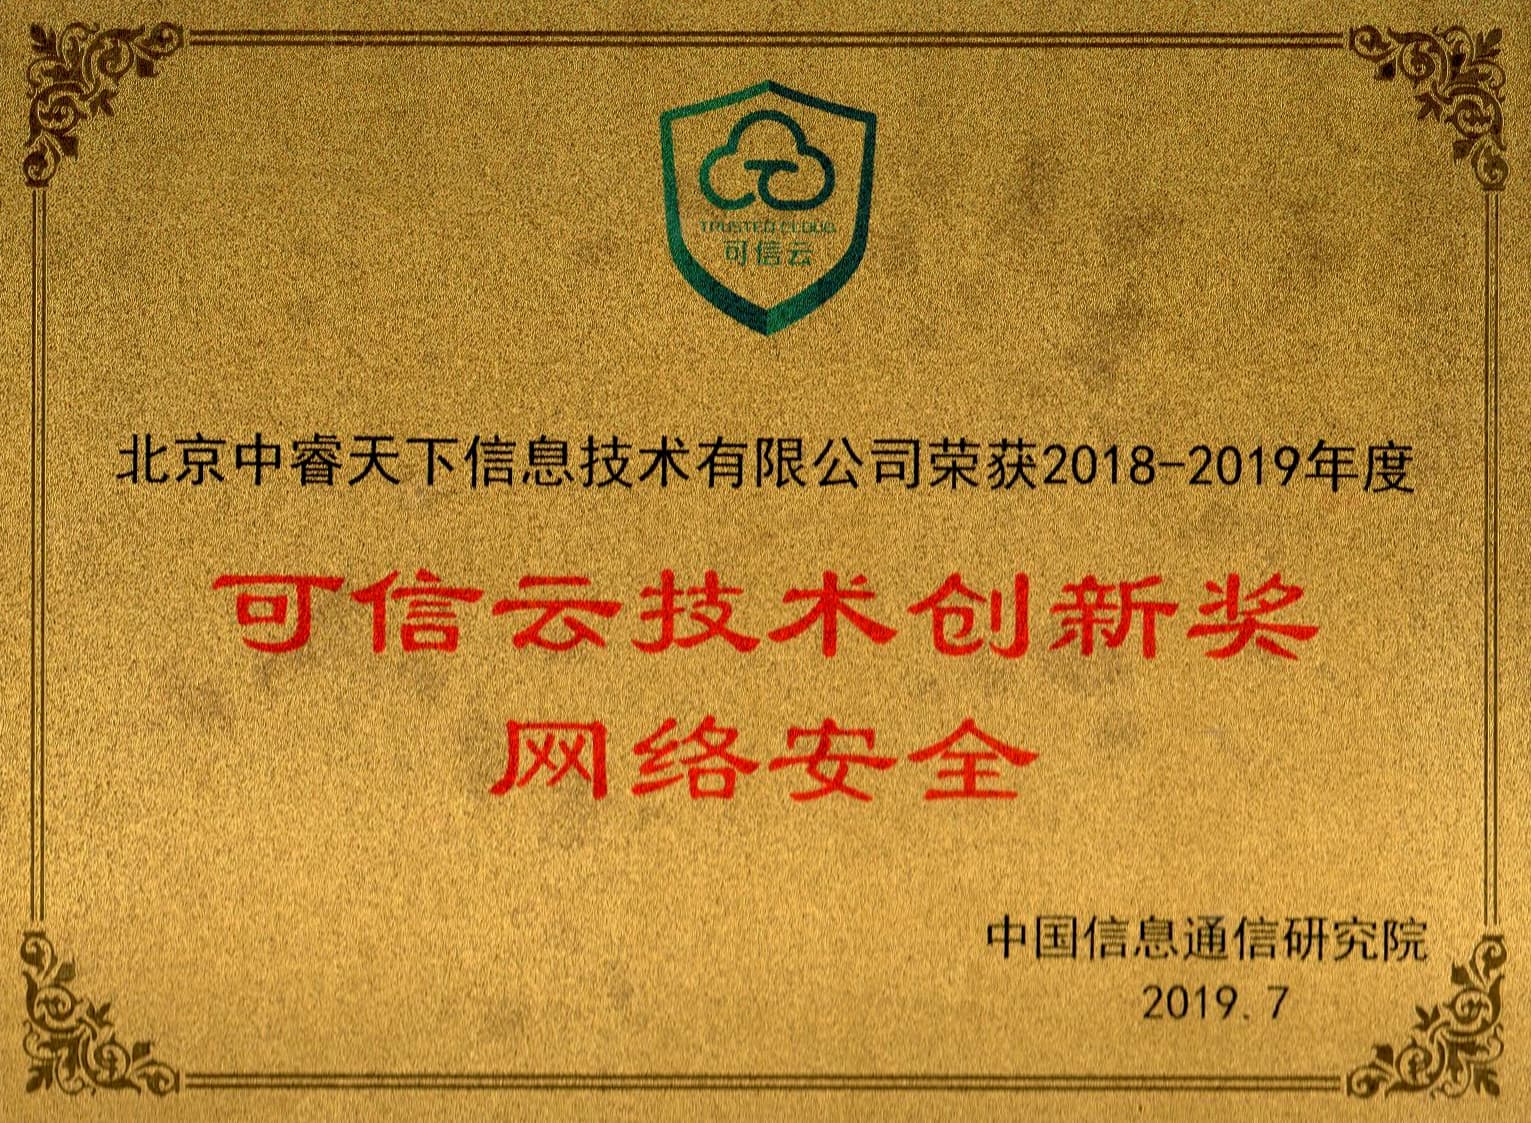 中国信息通信研究院「2019年可信云技术奖」